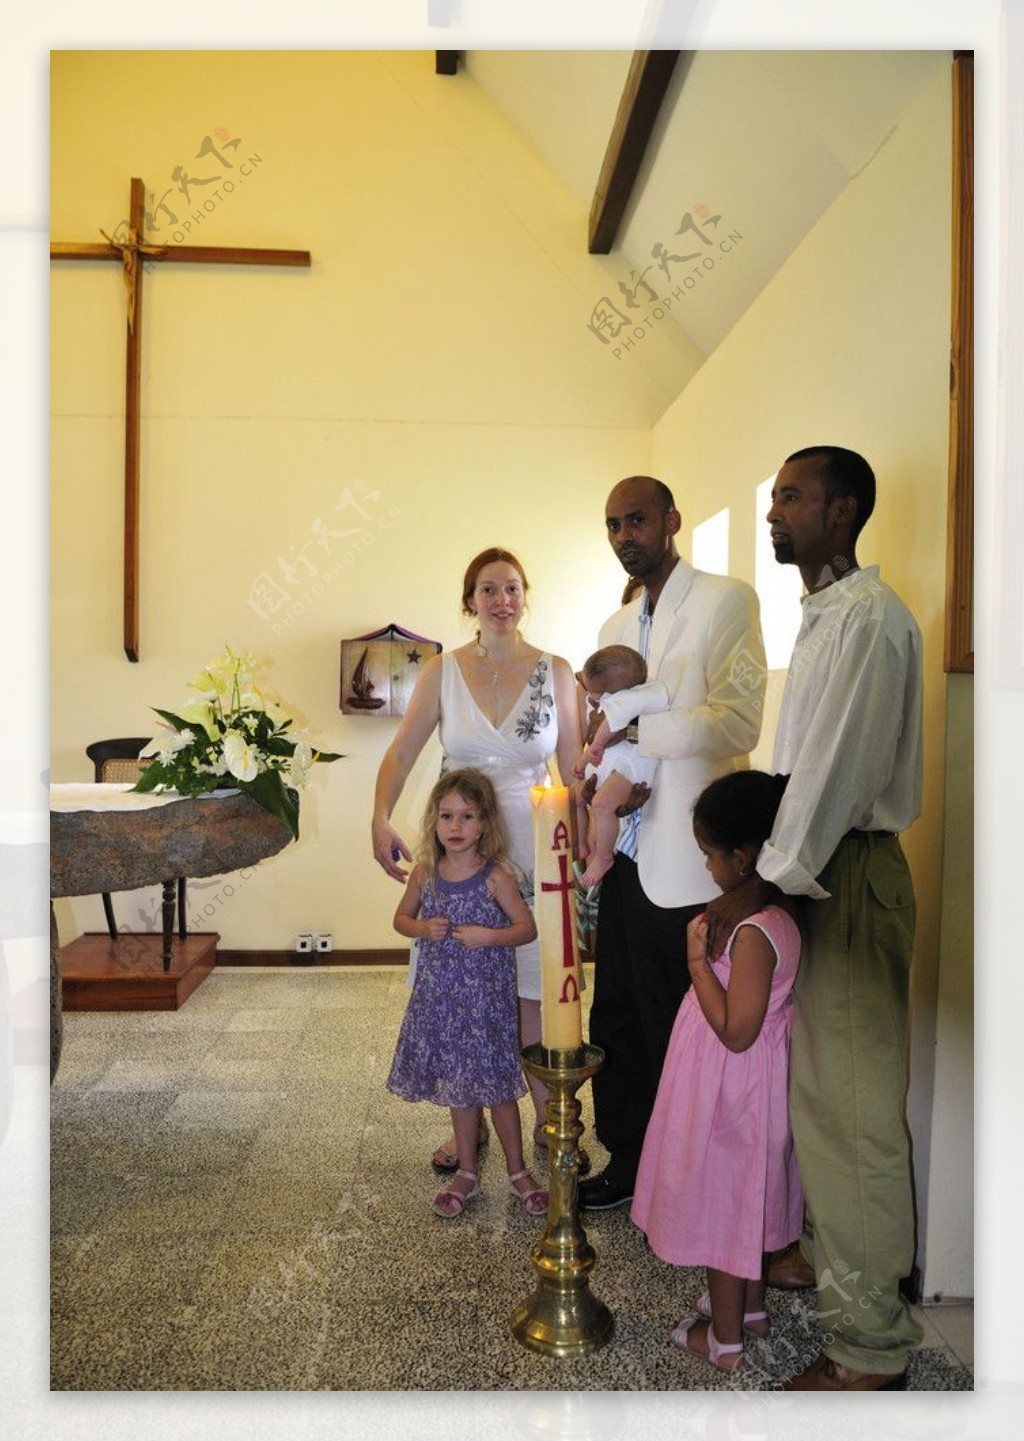 毛里求斯路易港红瓦耶稣教堂内景图片